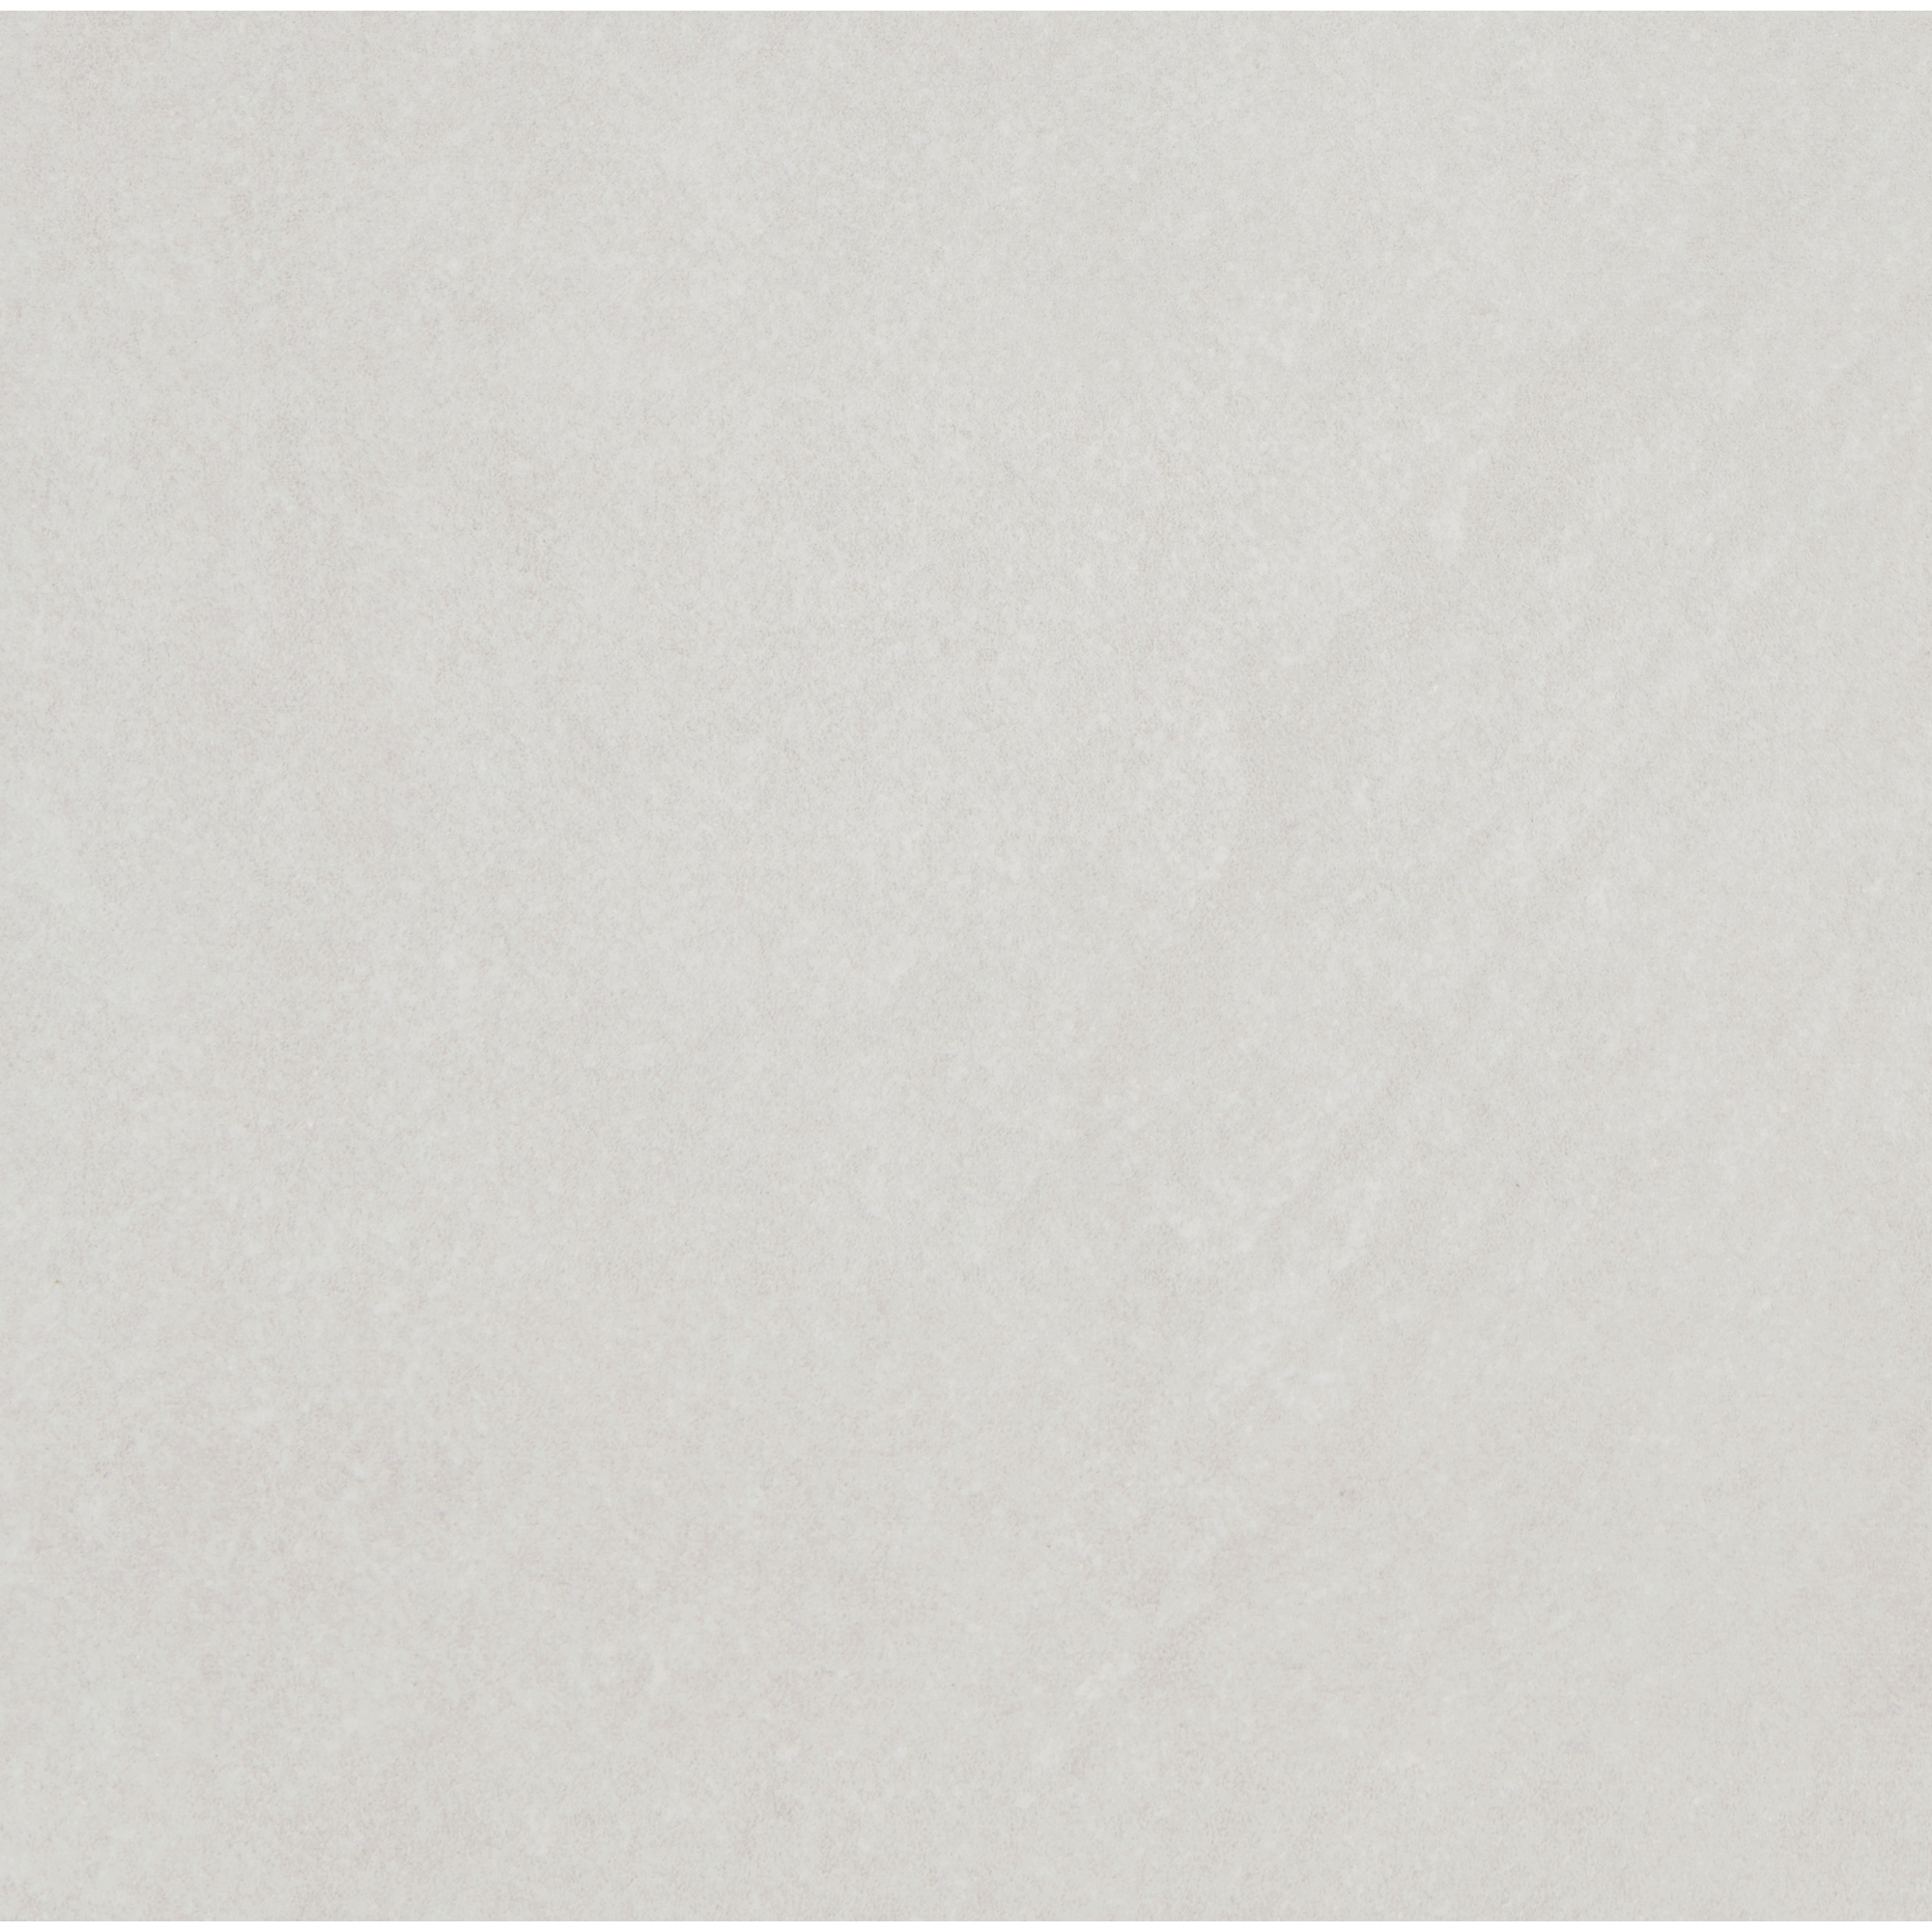 Bodenfliese 'Spazio' Feinsteinzeug grau 32,5 x 32,5 cm + product picture